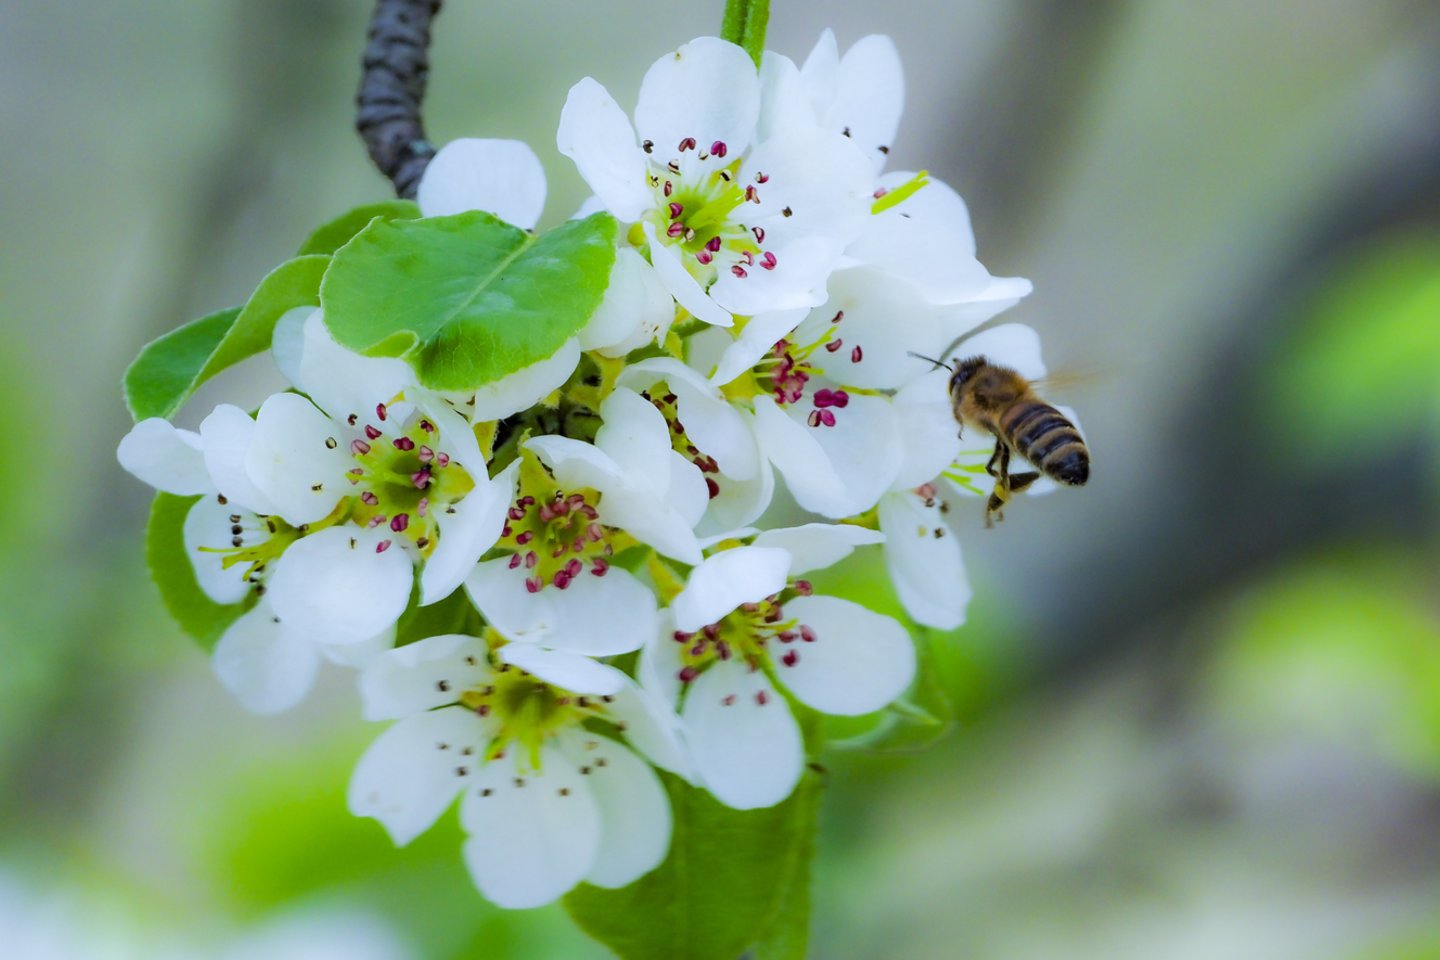 Net ir vienas kvadratinis metras žydinčios pievos esant tinkamoms sąlygoms gali pritraukti ir sukurti galimybę pasimaitinti šimtams ar tūkstančiams bičių, kitų vabzdžių.<br>V.Ščiavinsko nuotr.